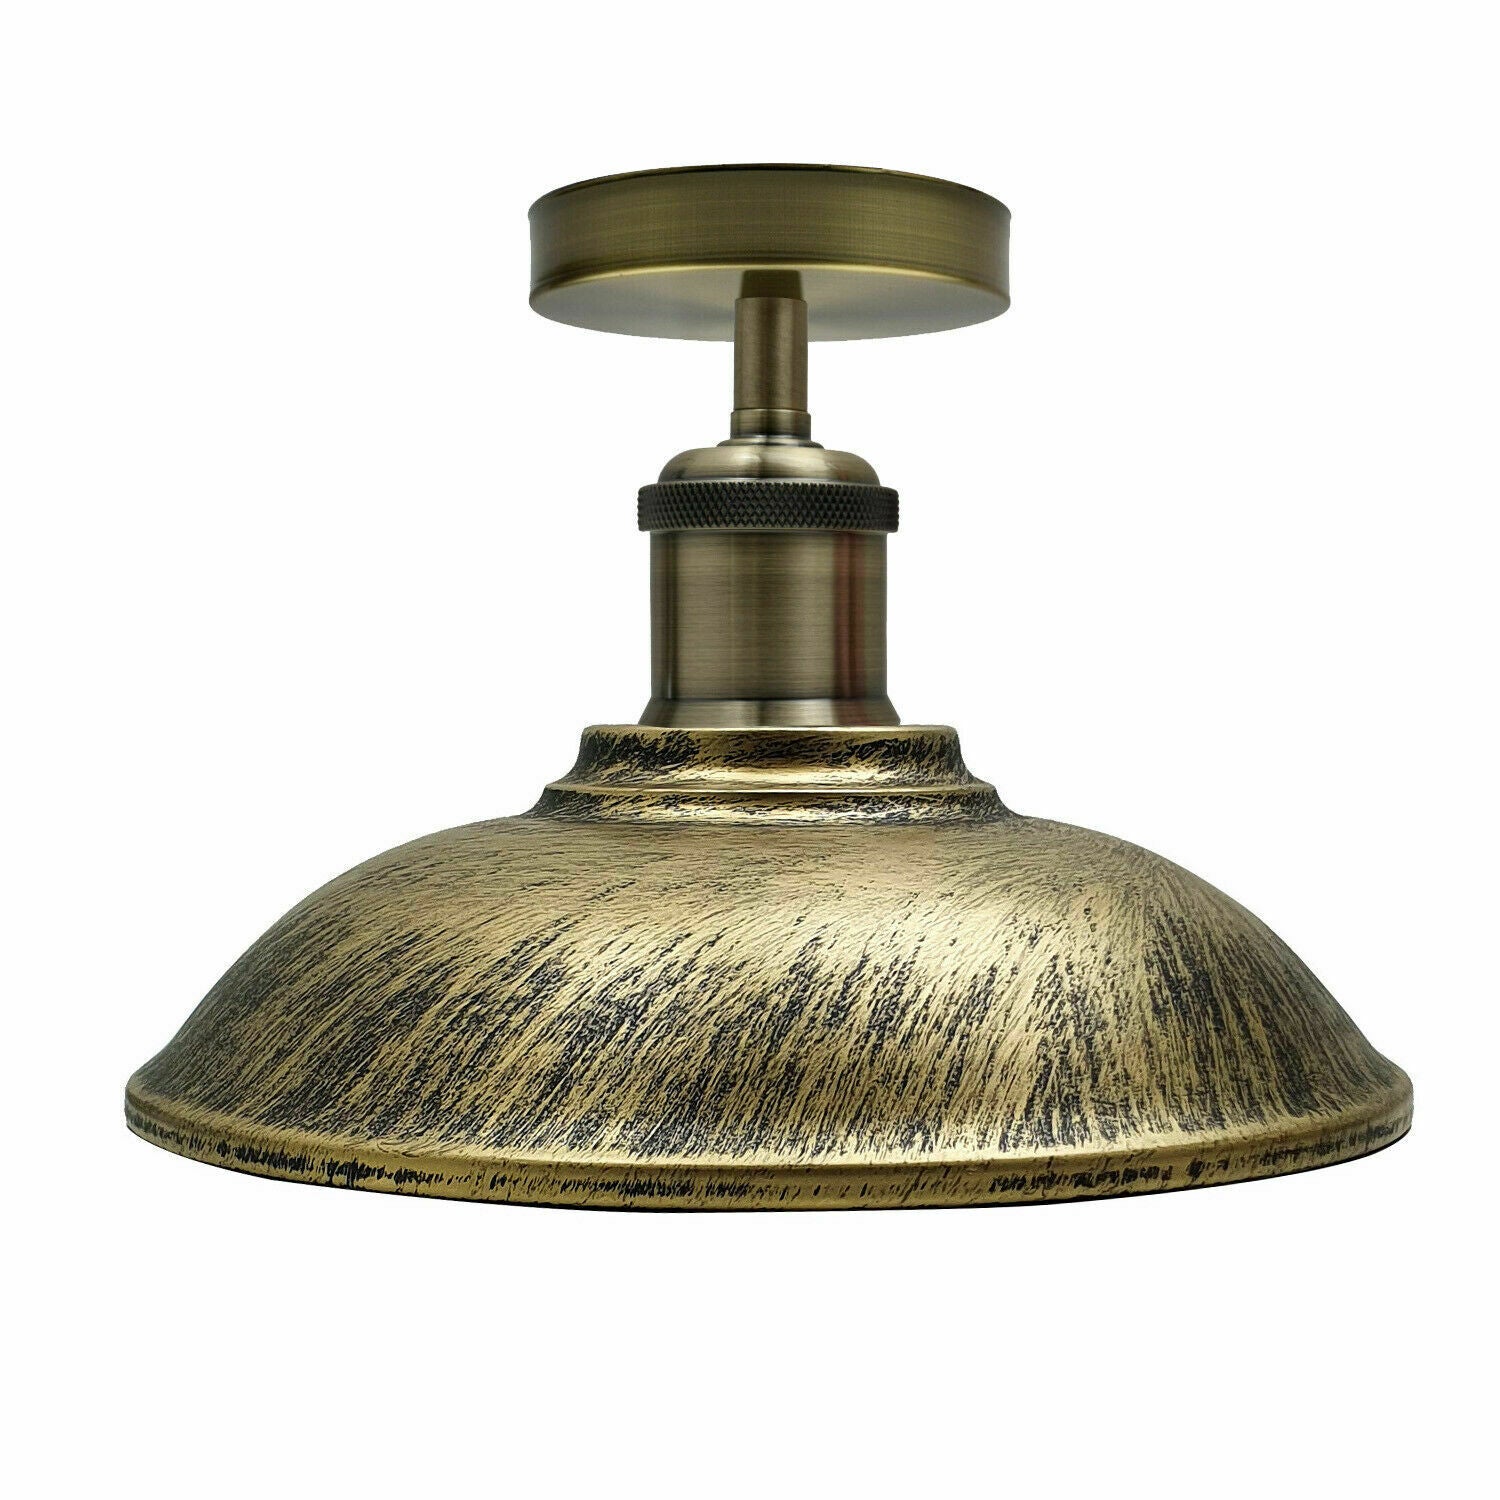 Vintage Industrial Metal Light Shades Ceiling Pendant Light For Bed Room, Guestroom, Living Room, Kitchen~1299 - LEDSone UK Ltd